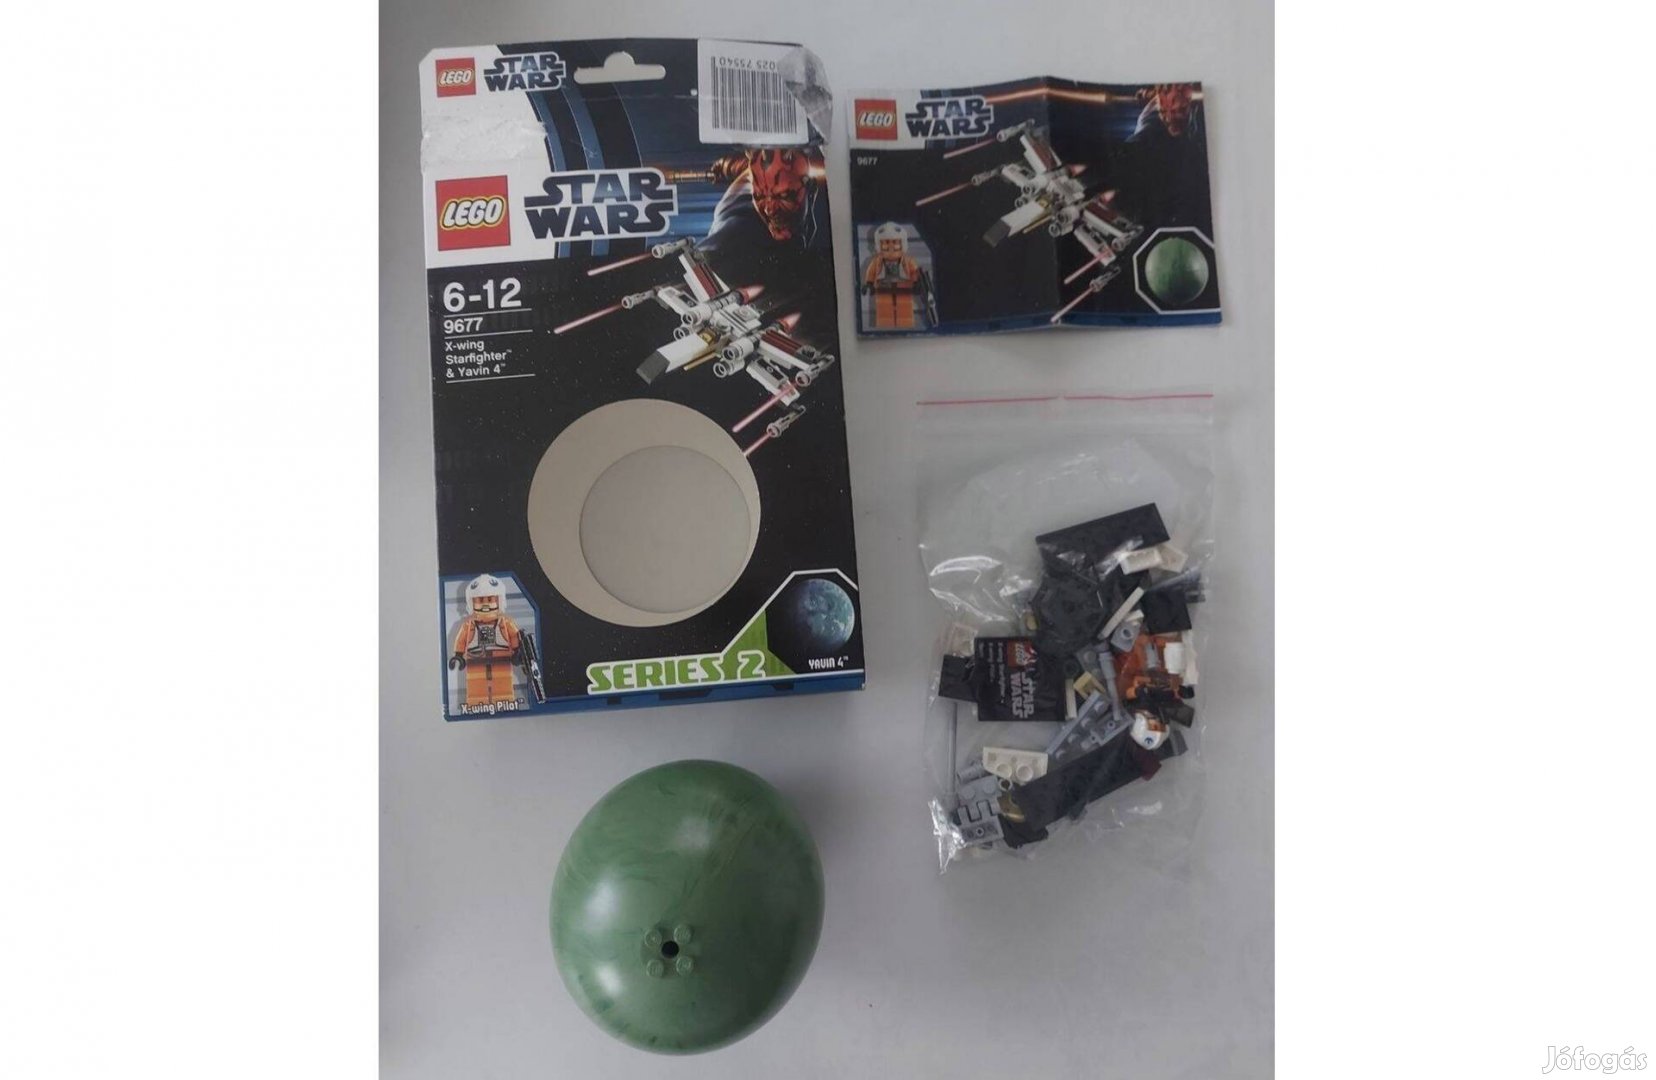 LEGO Star Wars 9677 - X-wing Starfighter és Yavin 4 bolygó